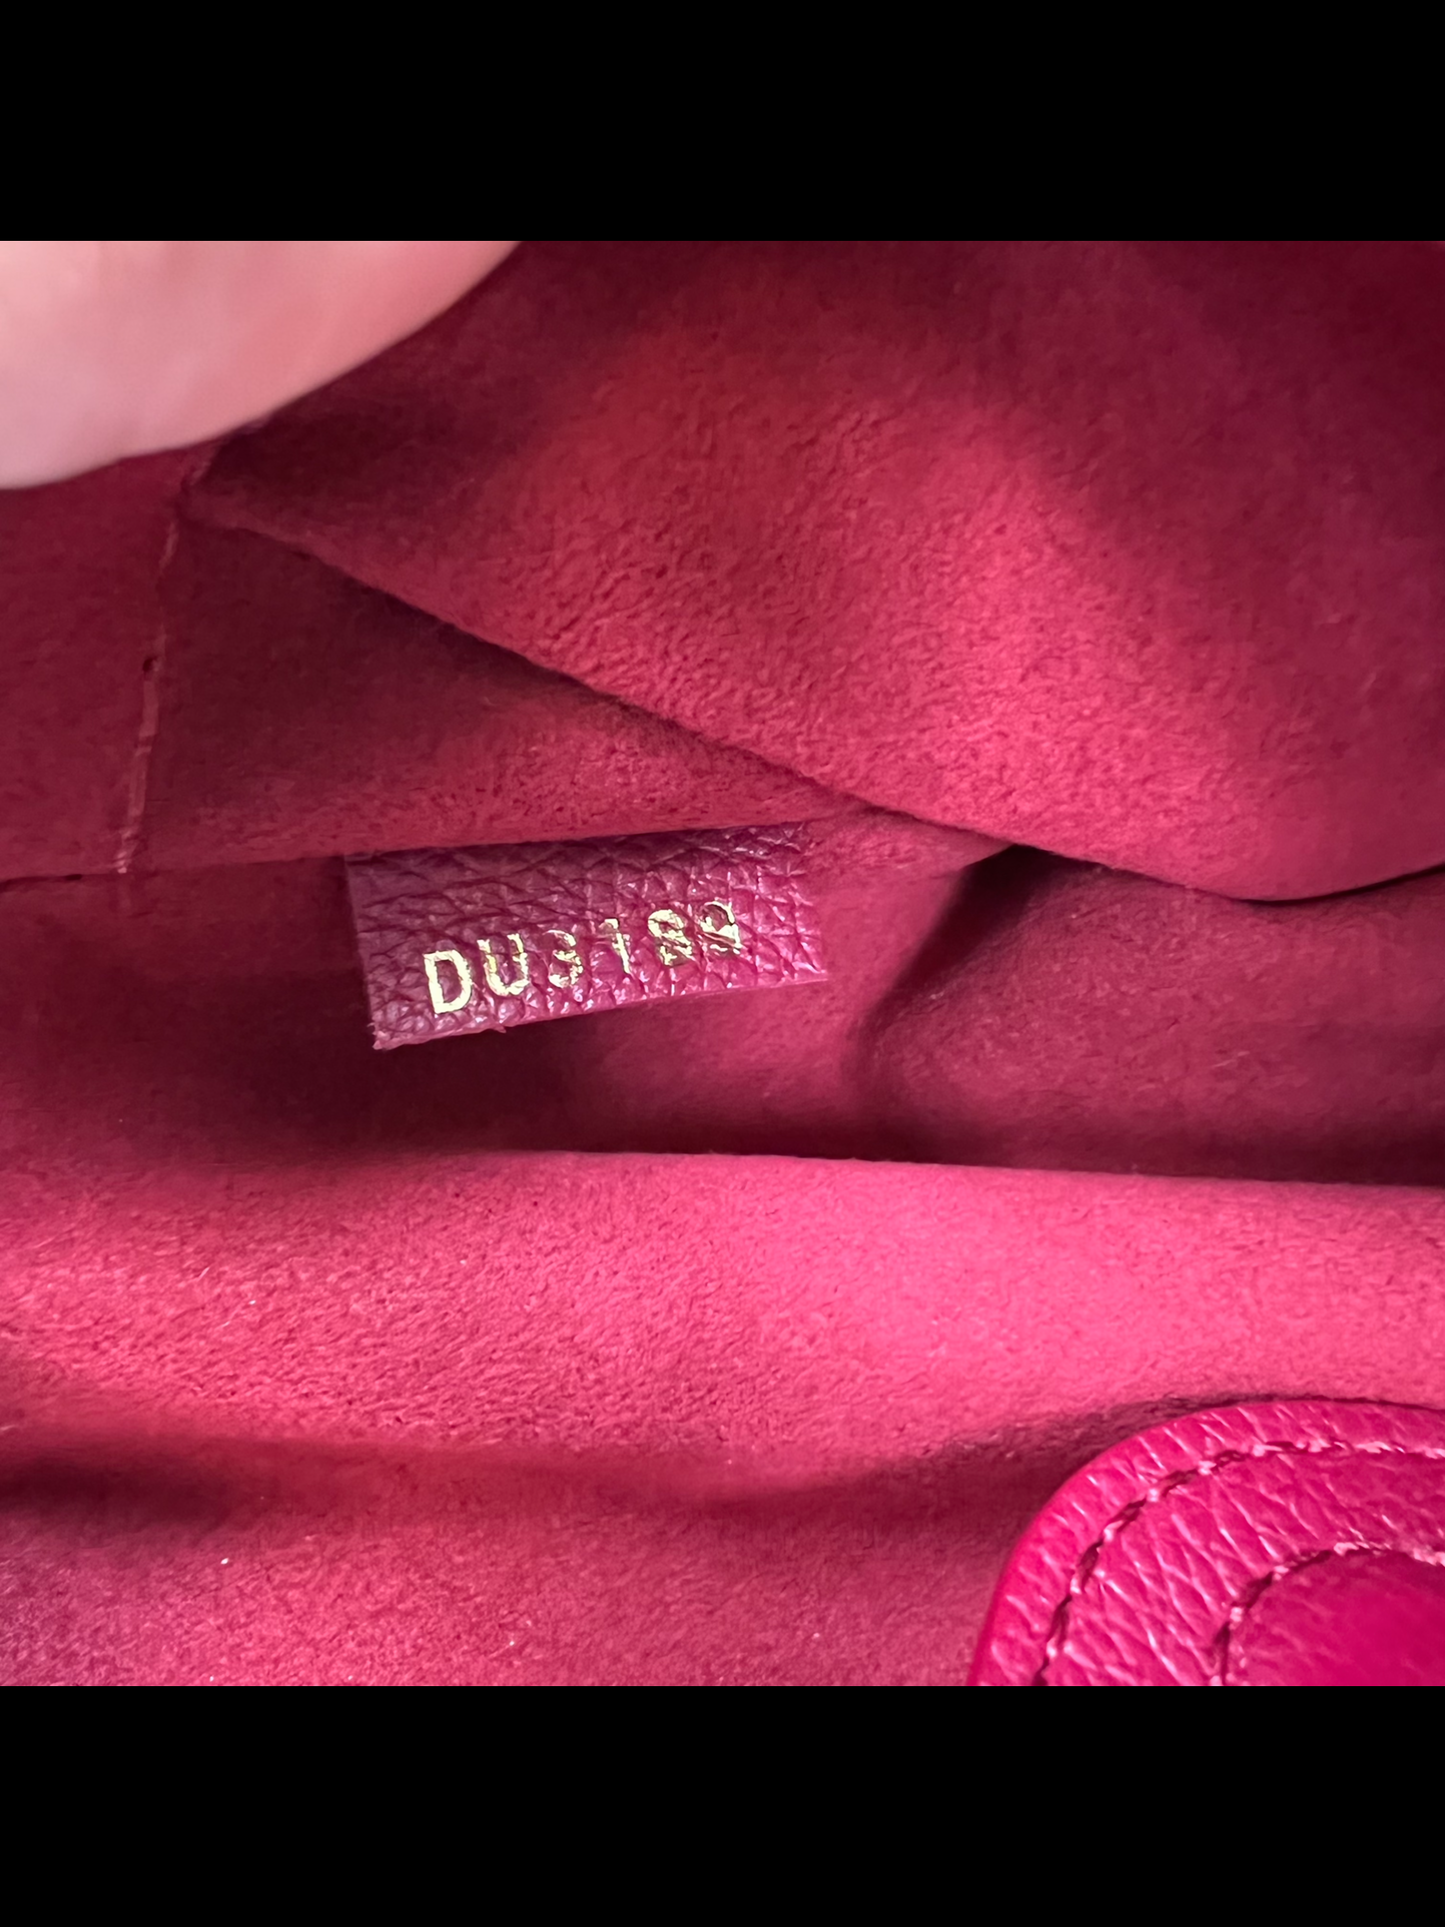 Louis Vuitton Riverside Damier Ebene Red Shoulder Bag